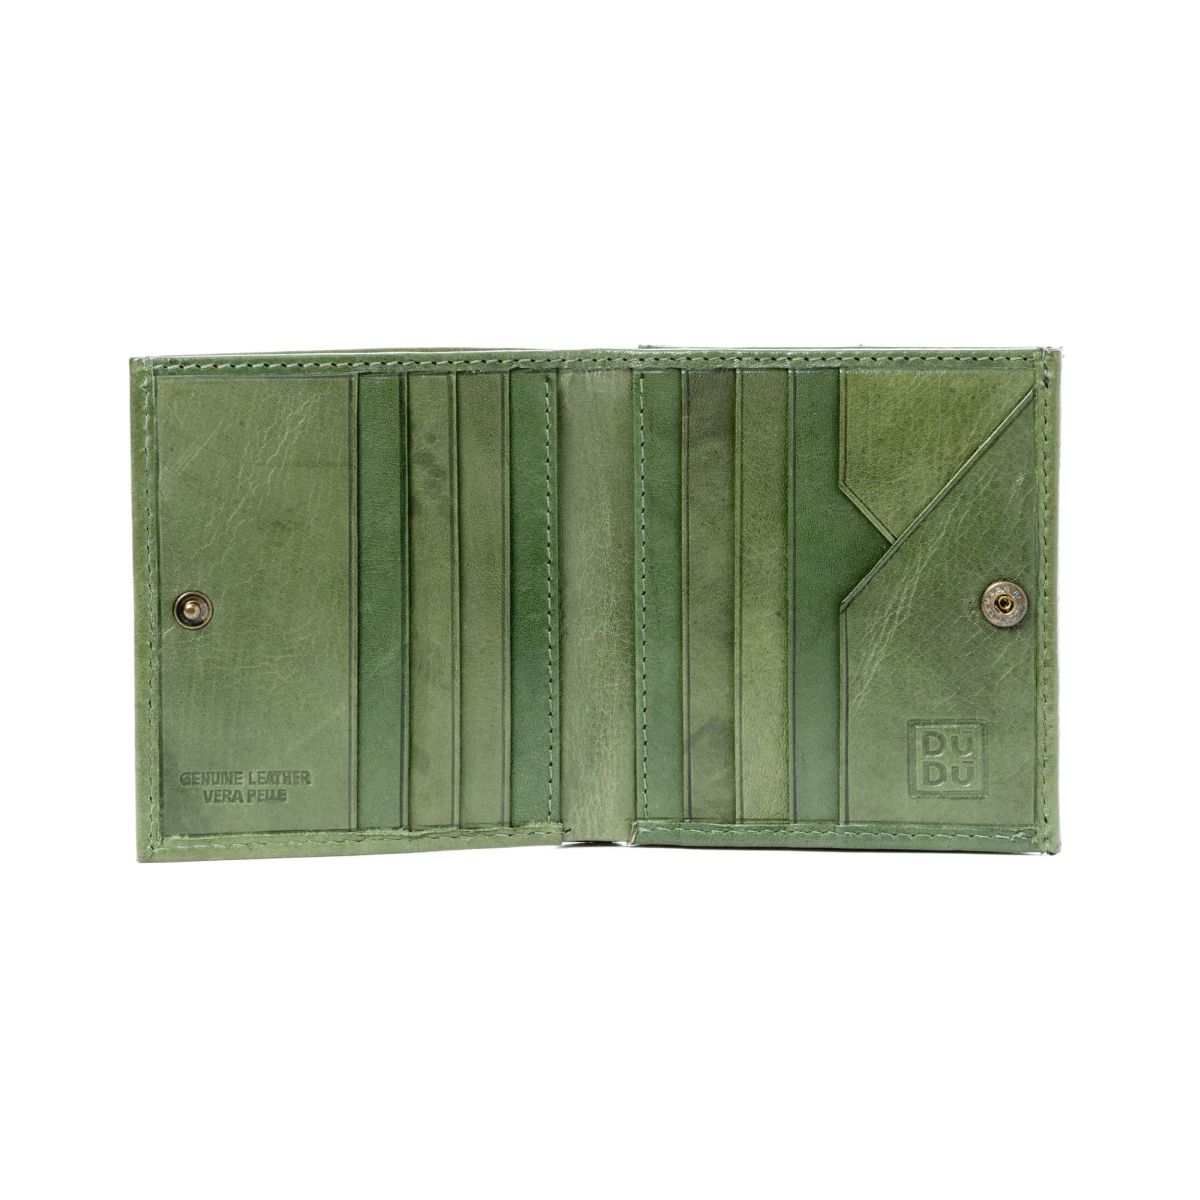 DuDu Small Unique Wallet  - Green